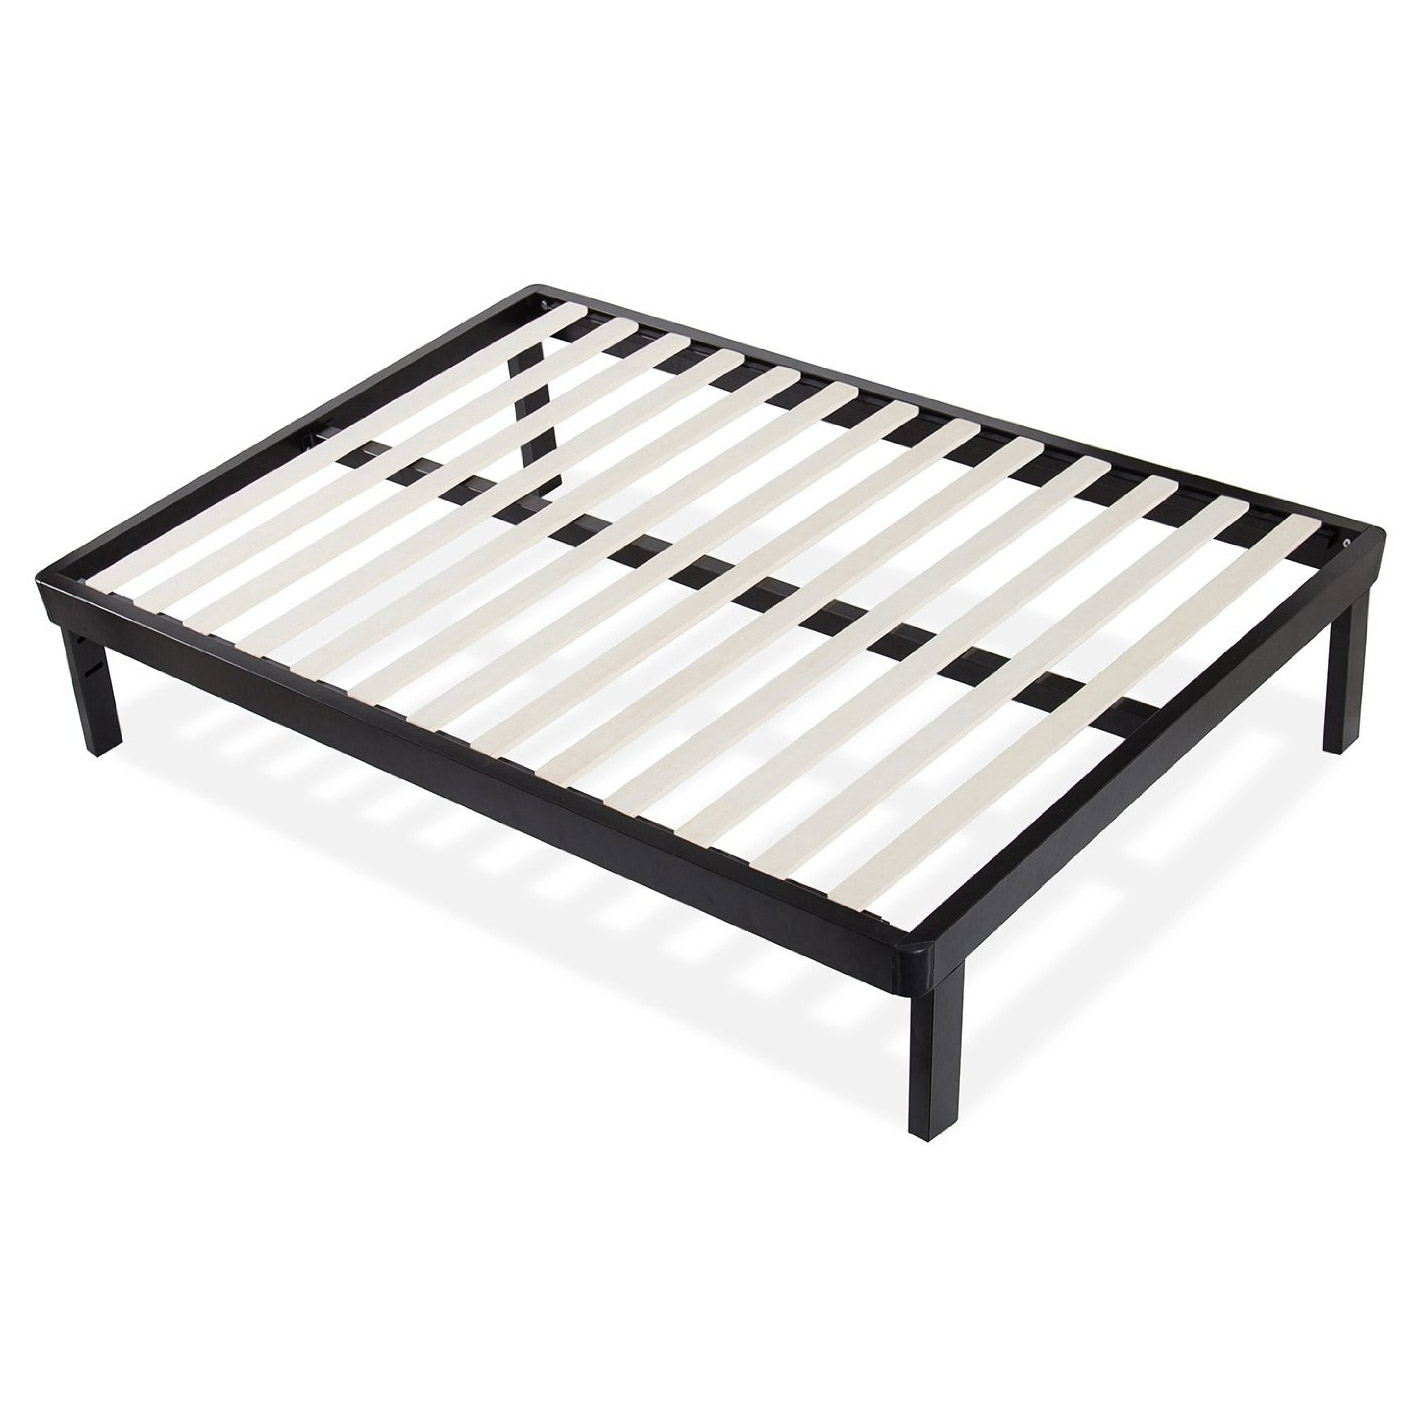 Metal Platform Bed Frame, Asian Platform Bed King